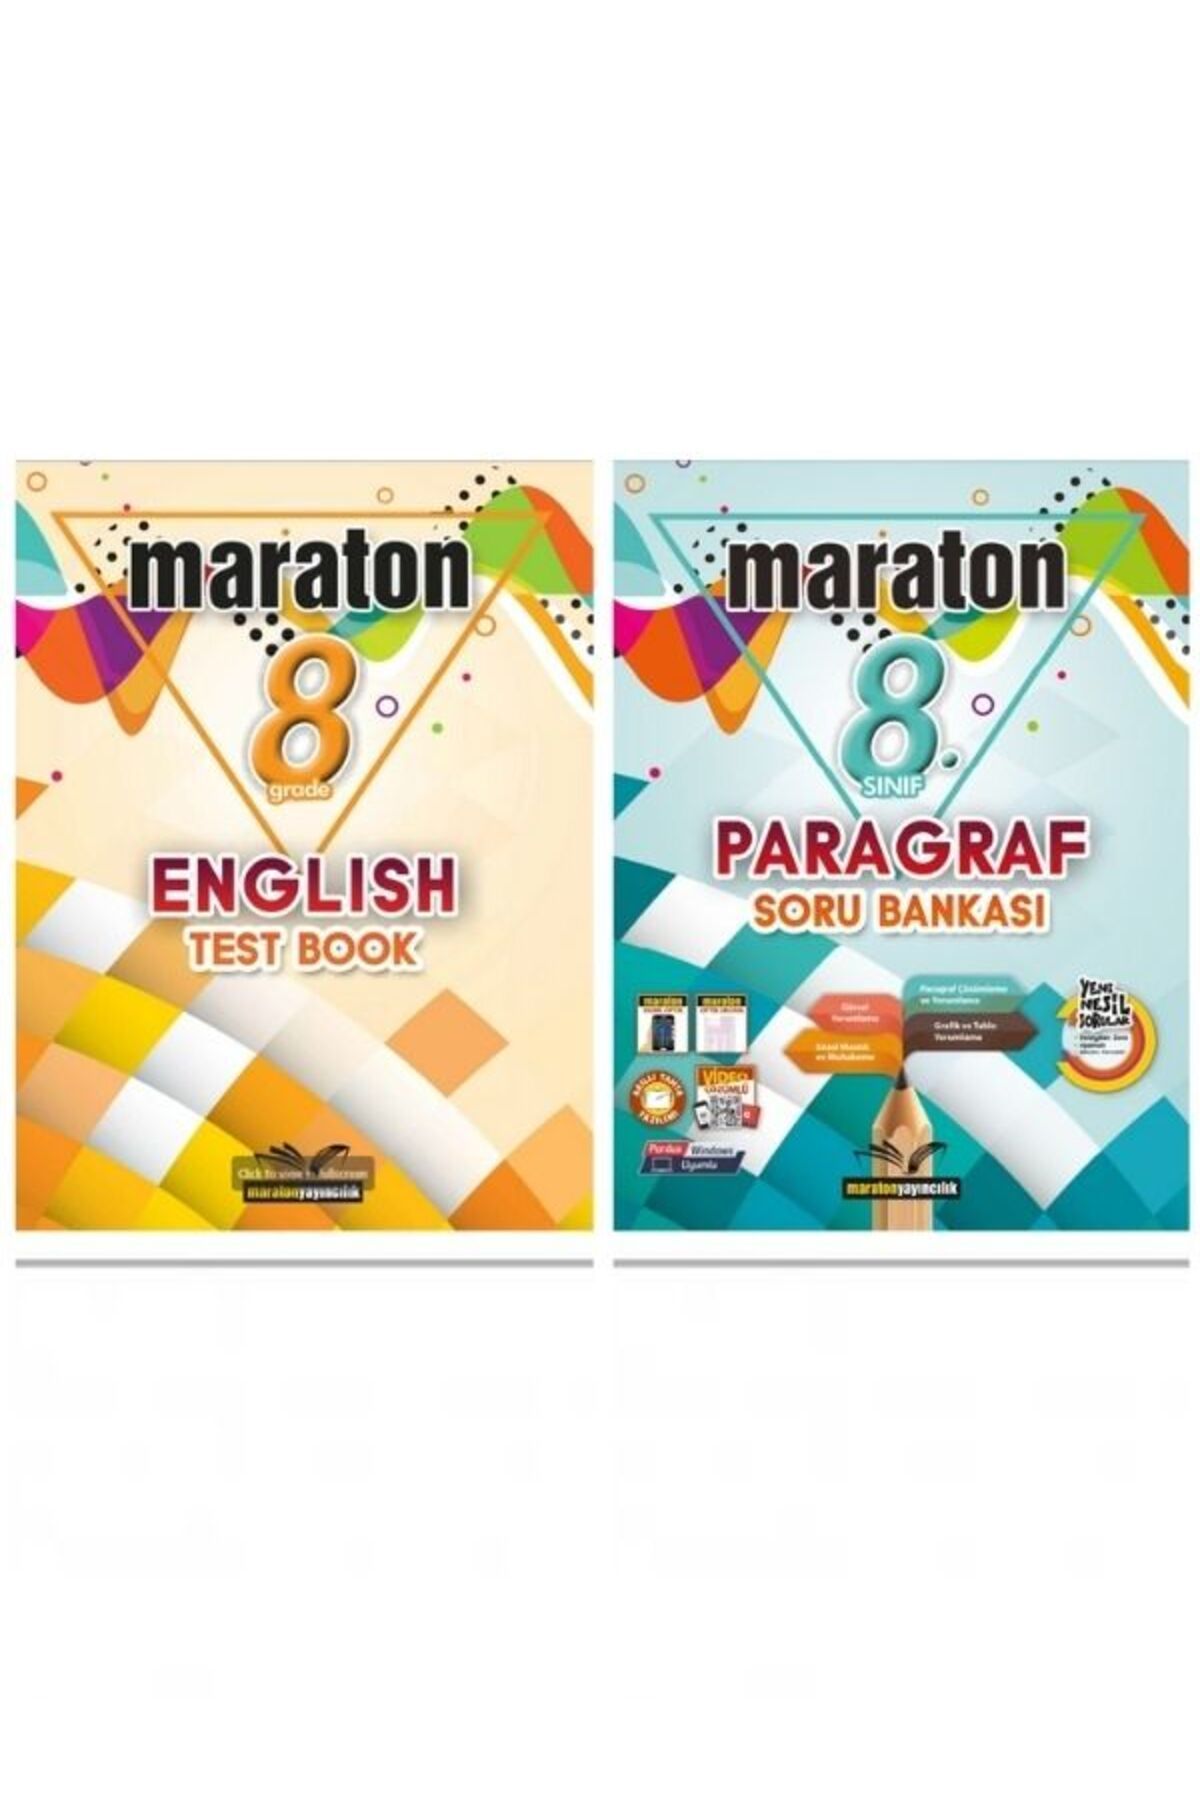 Maraton Yayınları maraton 8.Sınıf test book + paragraf Soru Bankası